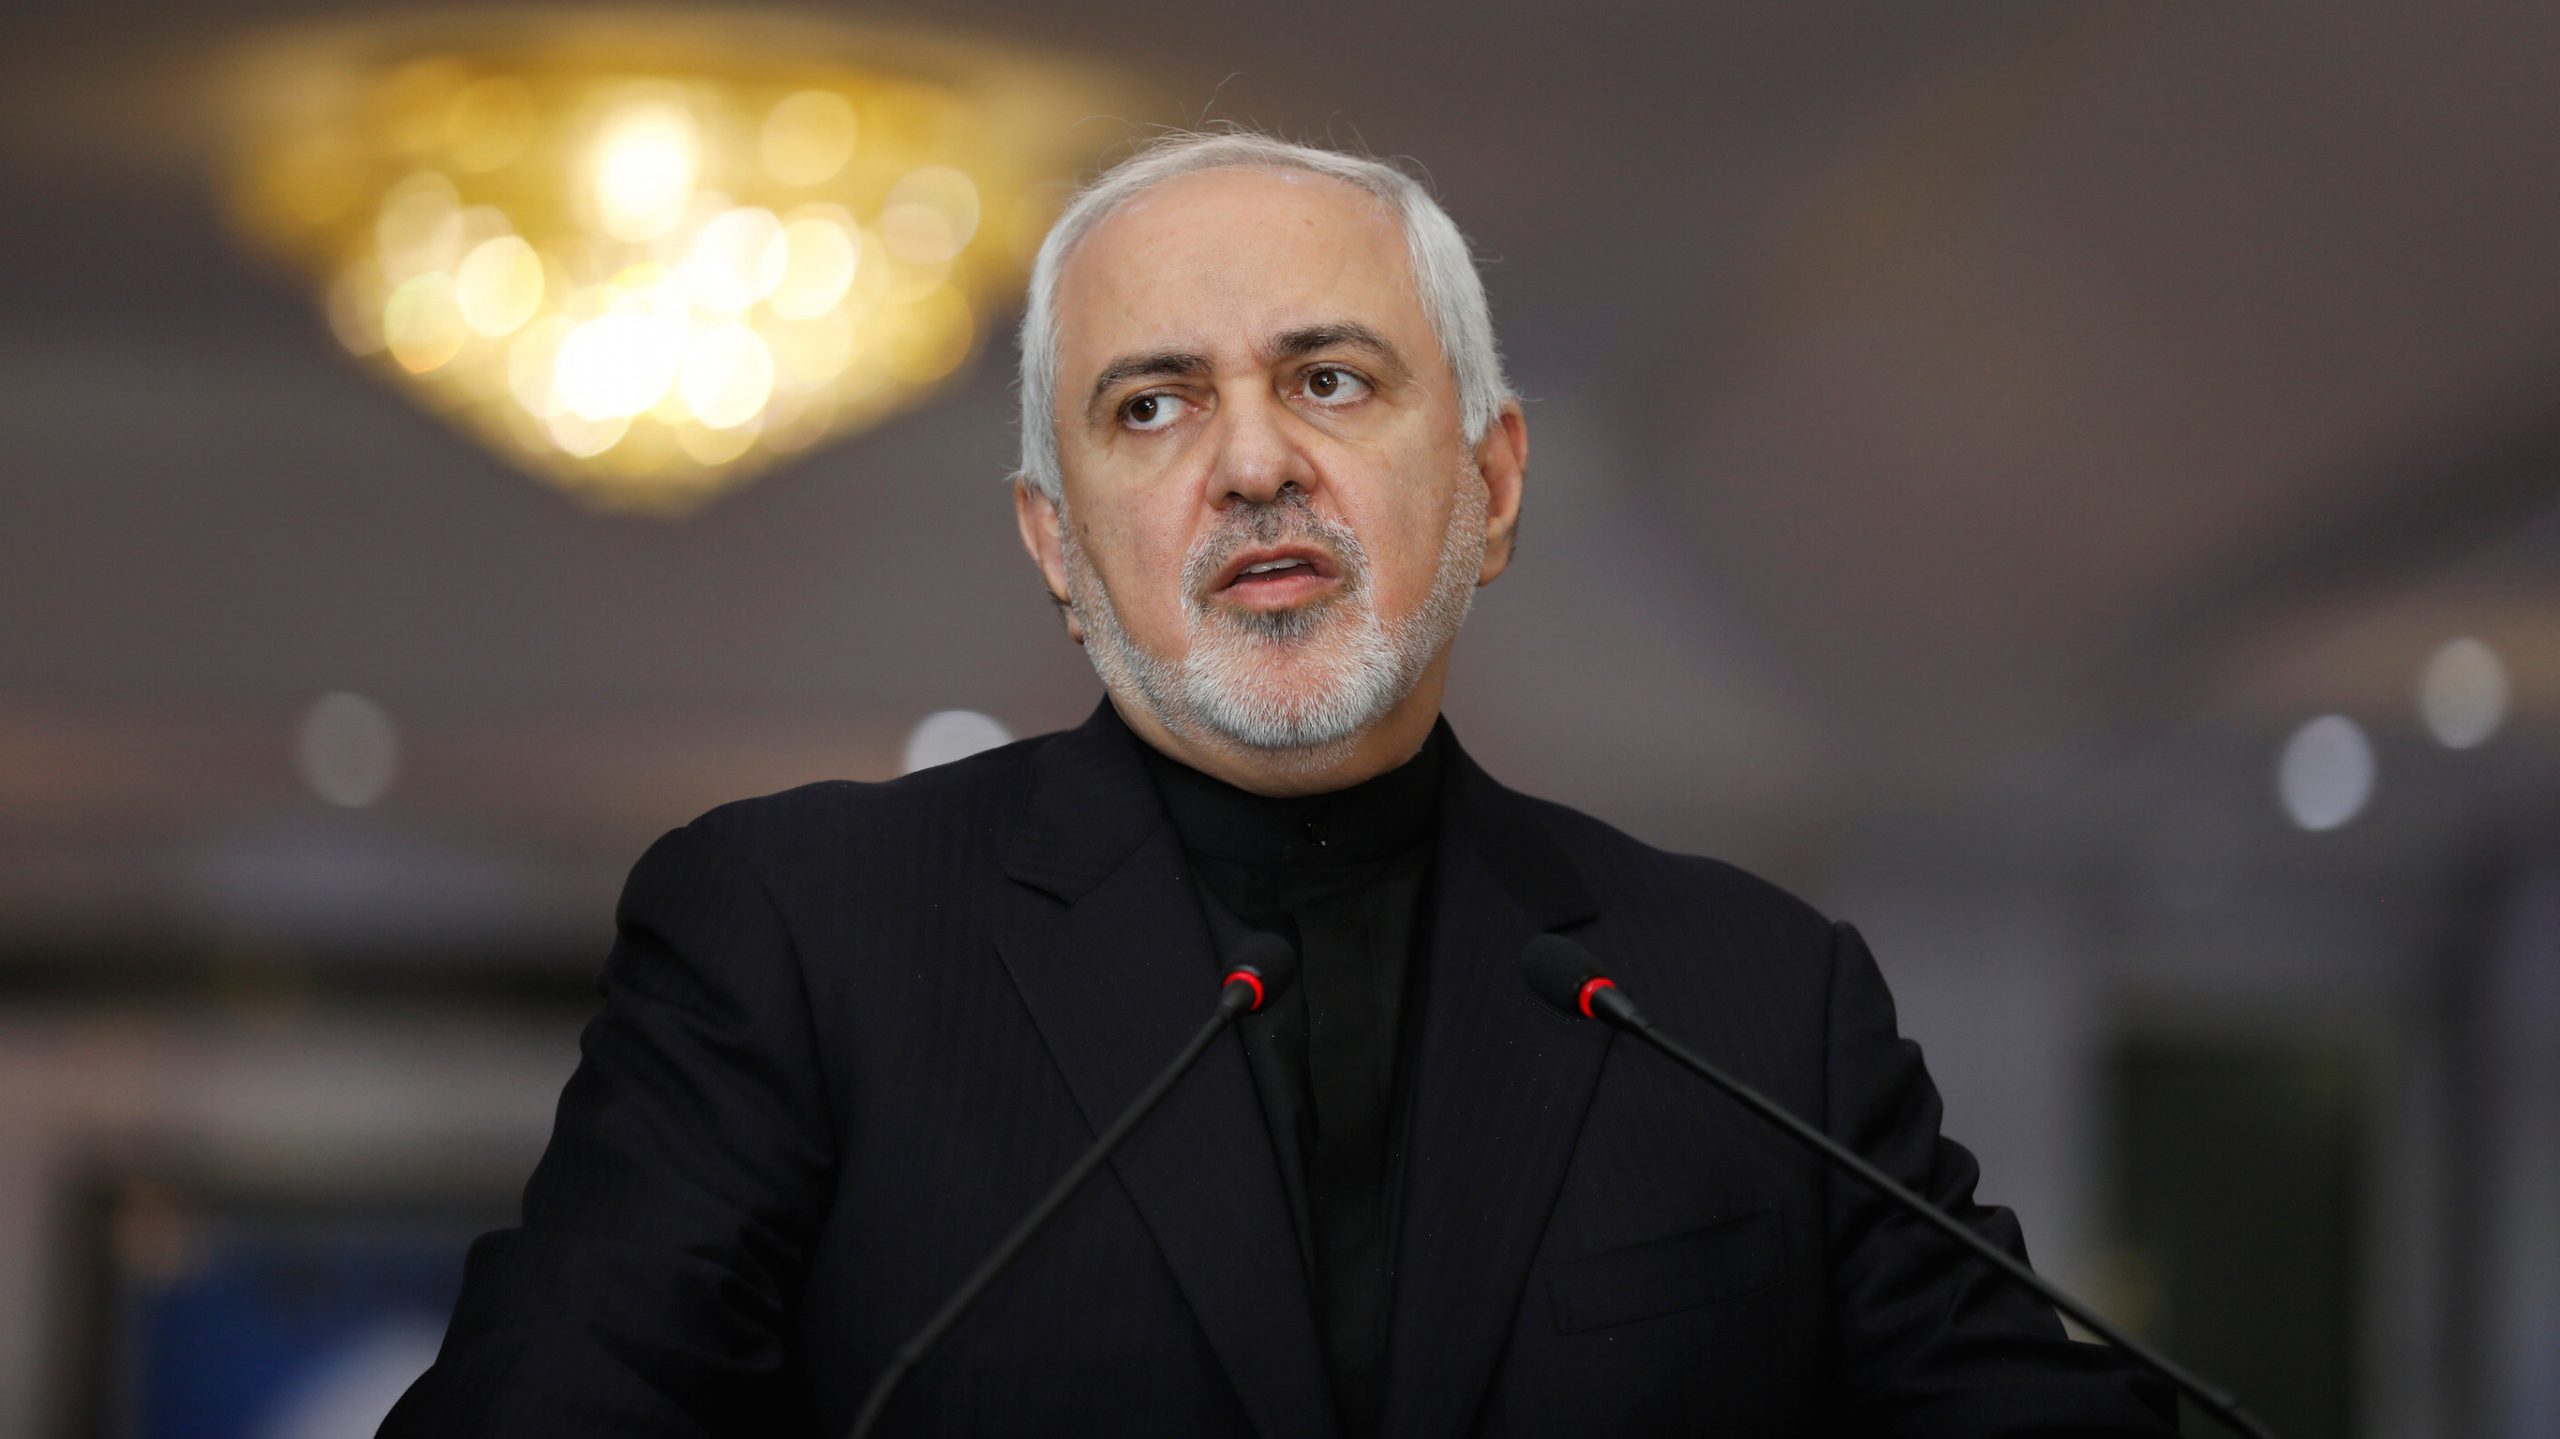 Ιρανός υπουργός Εξωτερικών για την παρουσία του στη διάσκεψη των G7: «Προσκλήθηκα με τη σύμφωνη γνώμη των ΗΠΑ»